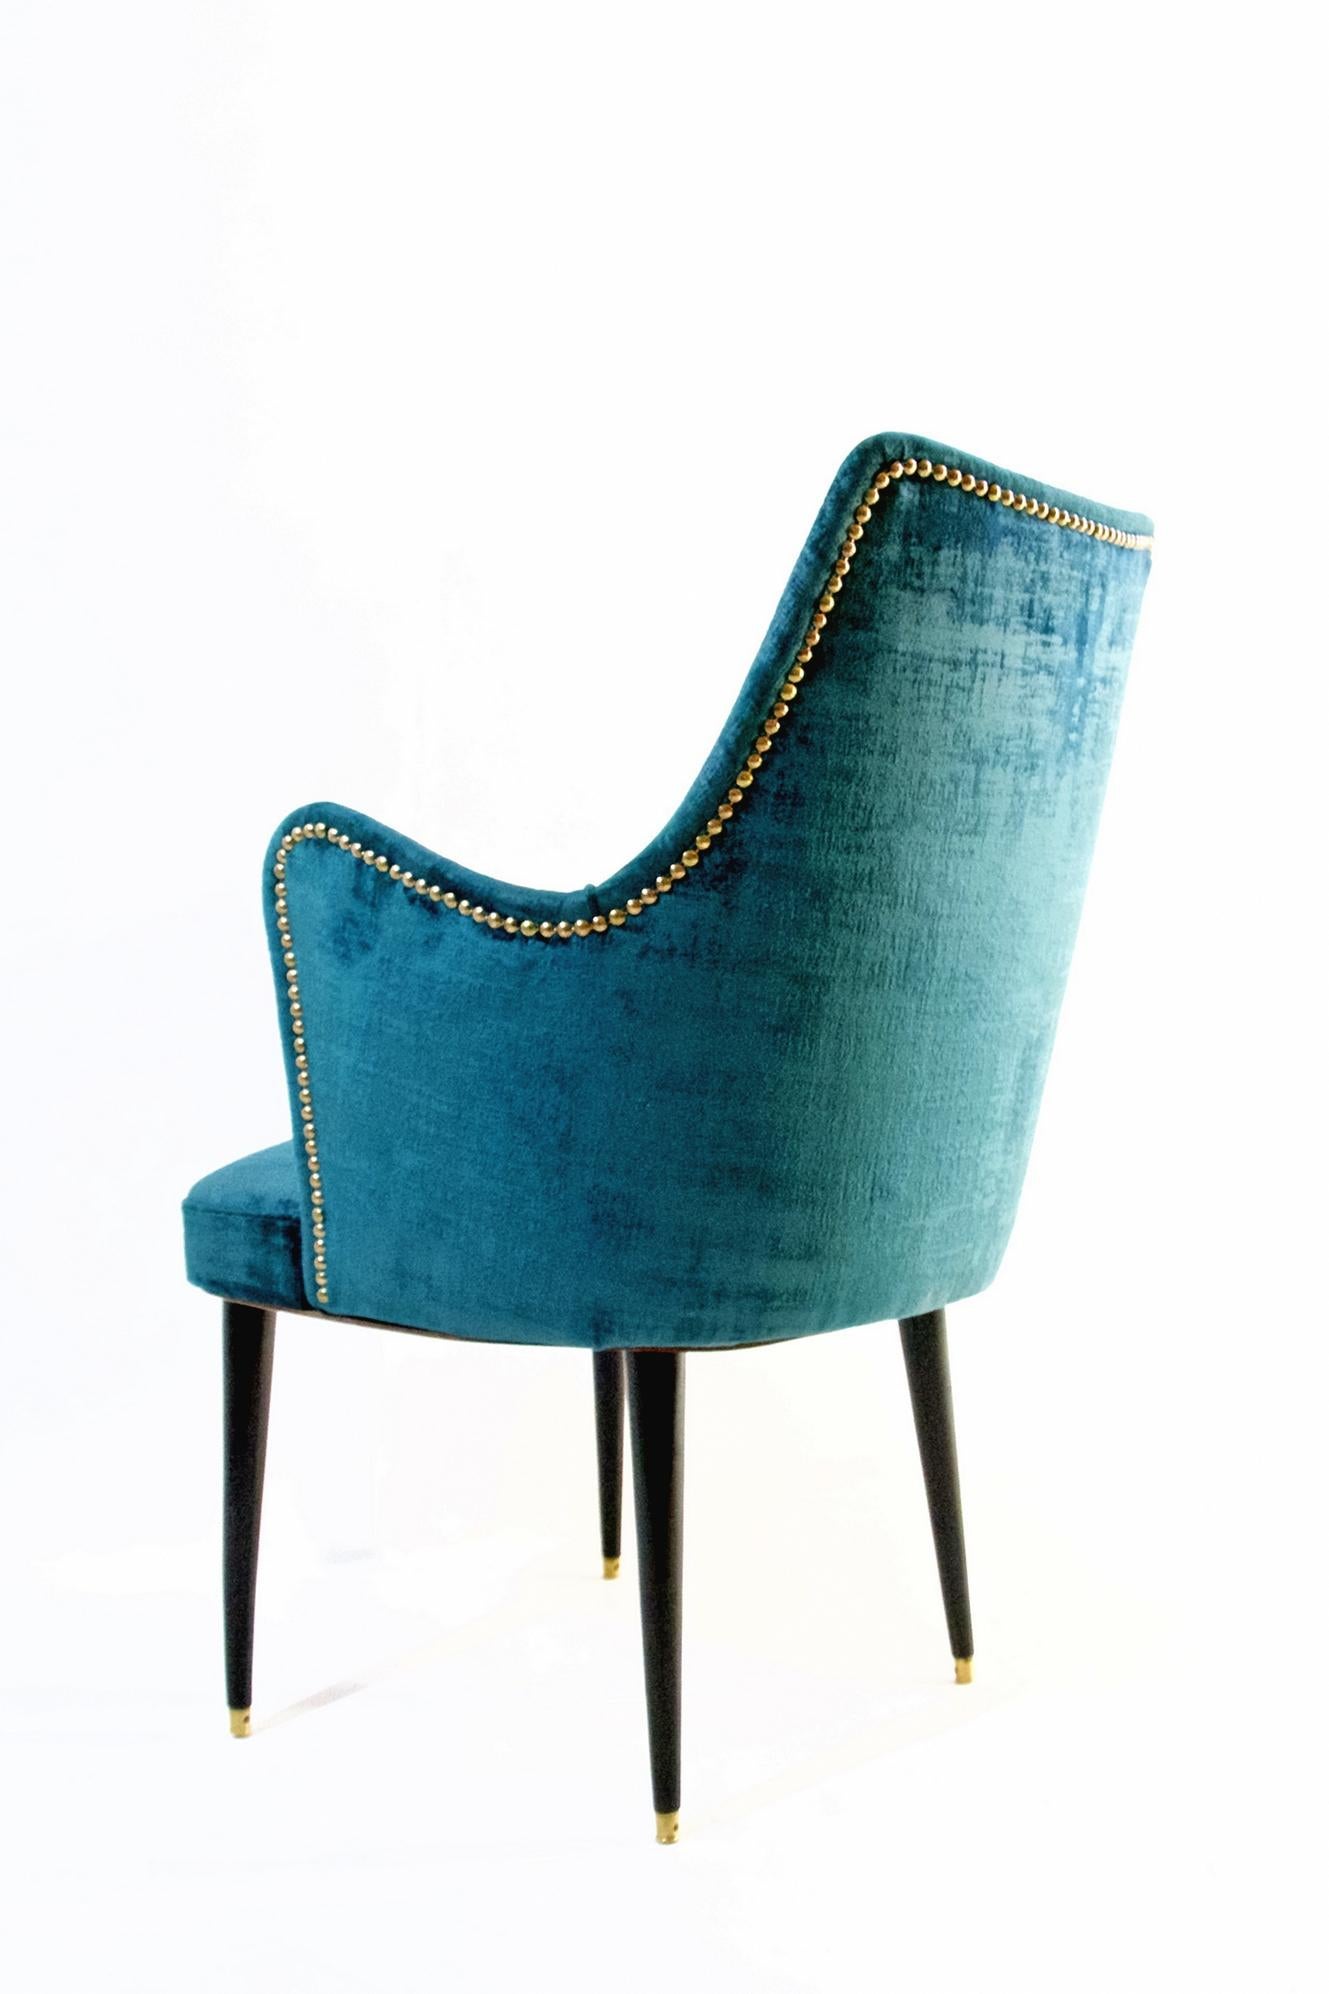 Mid-Century Modern Midcentury Teal Velvet Chairs by Osvaldo Borsani, Italy